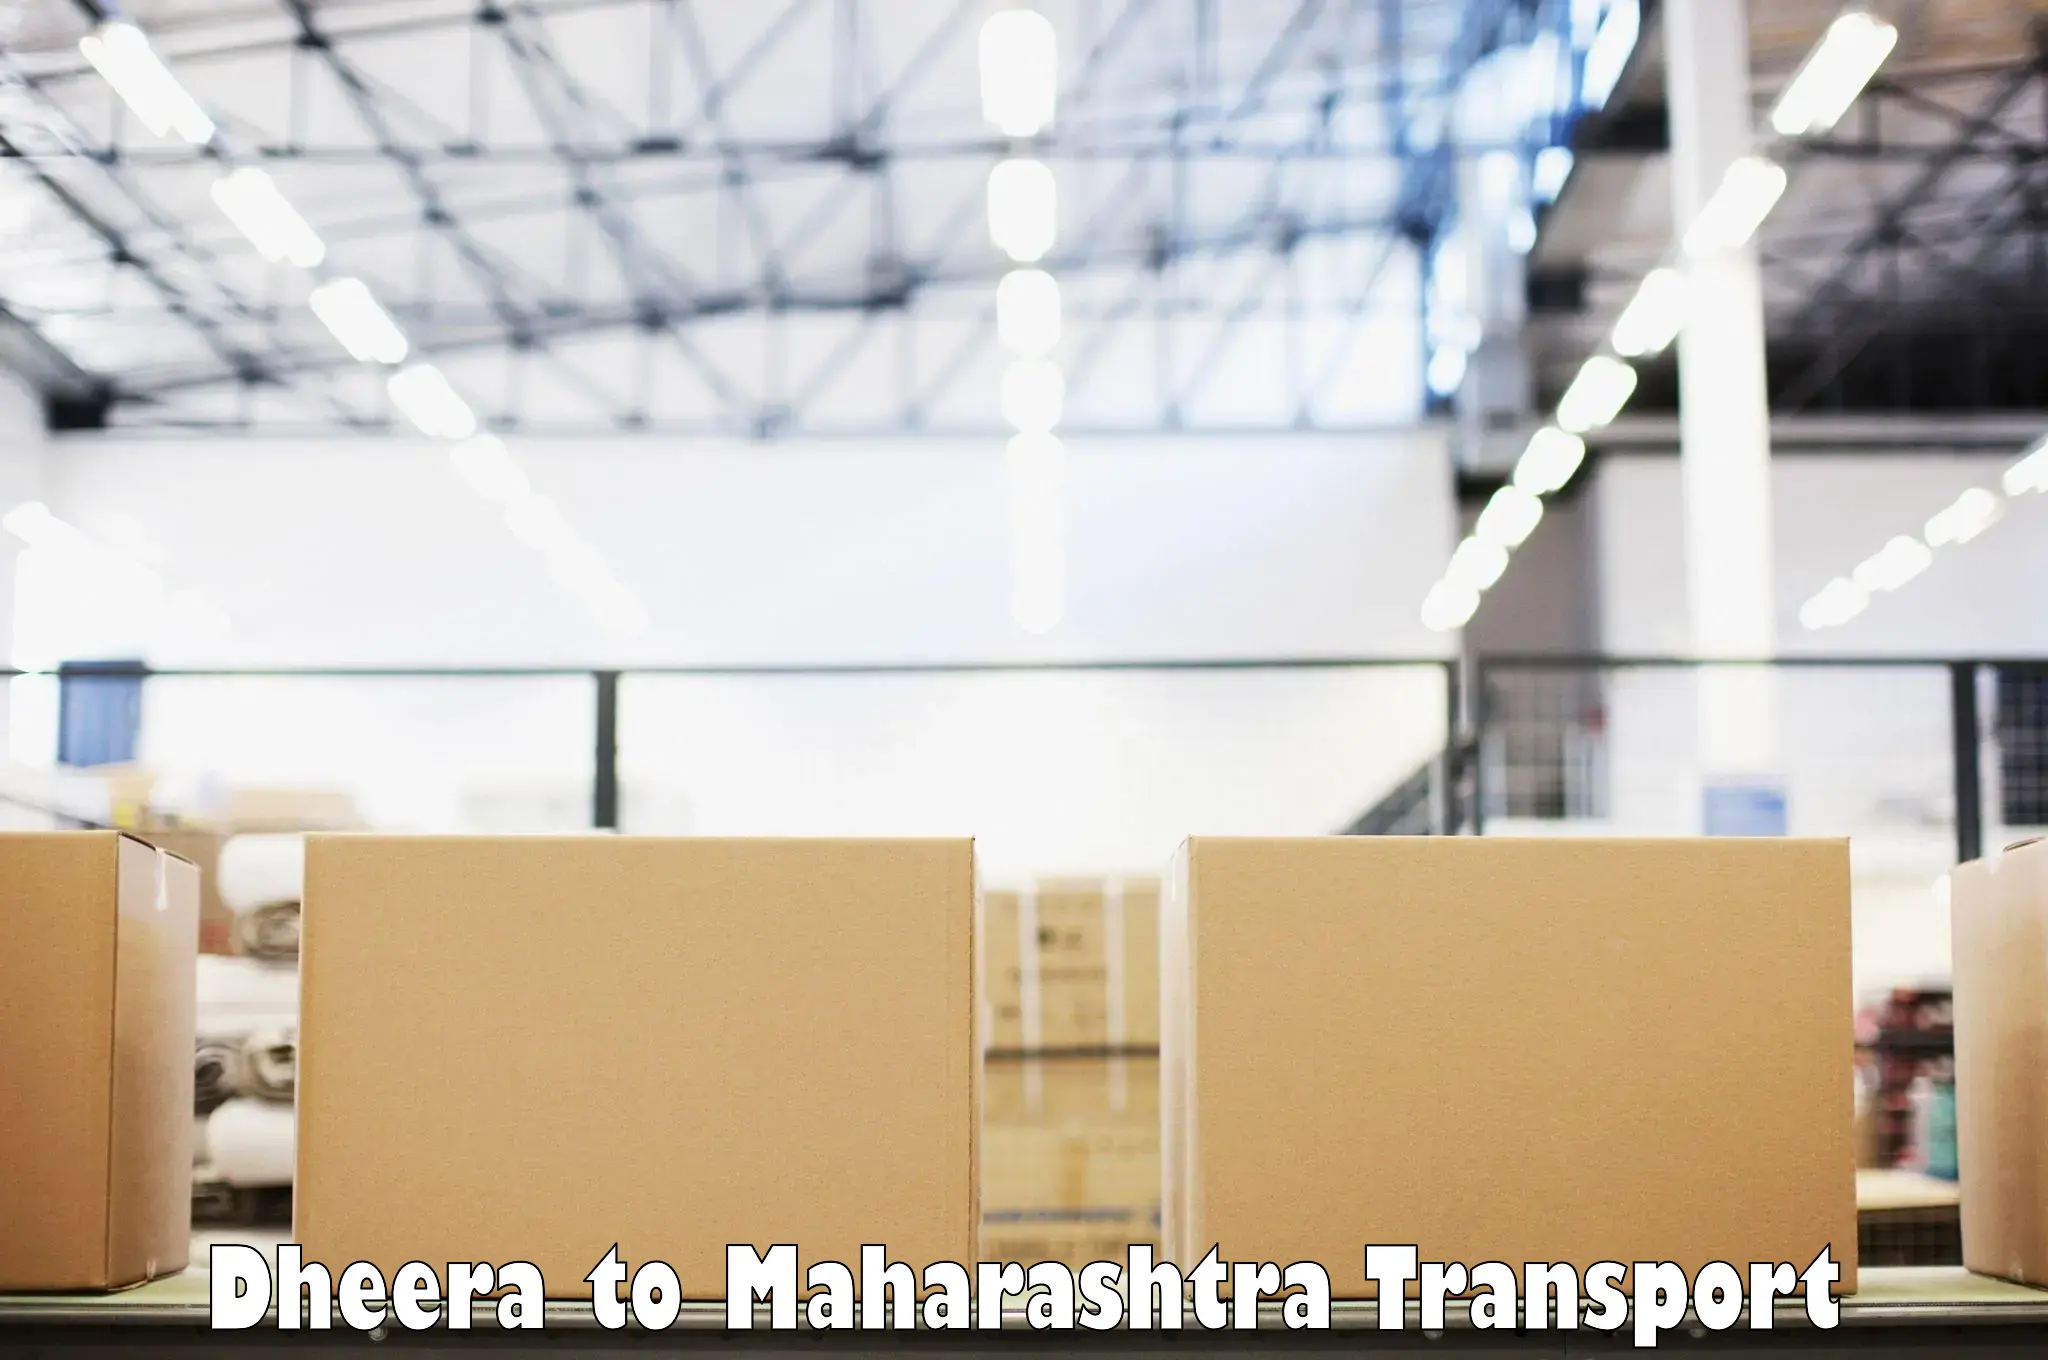 Pick up transport service Dheera to Andheri